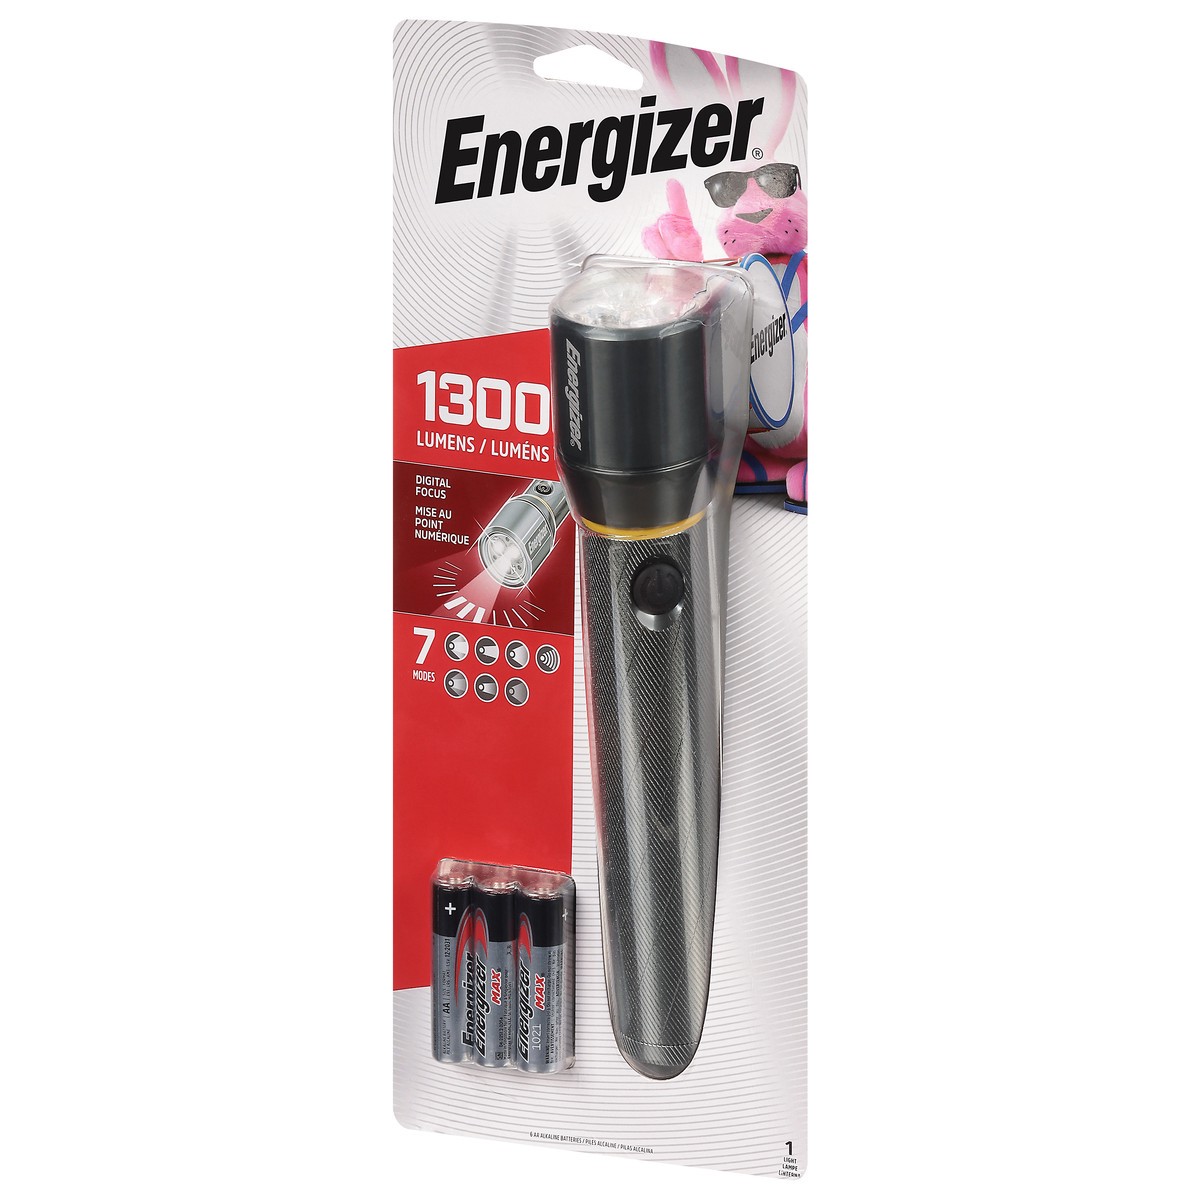 Energizer Led Metal Flashlight : Target